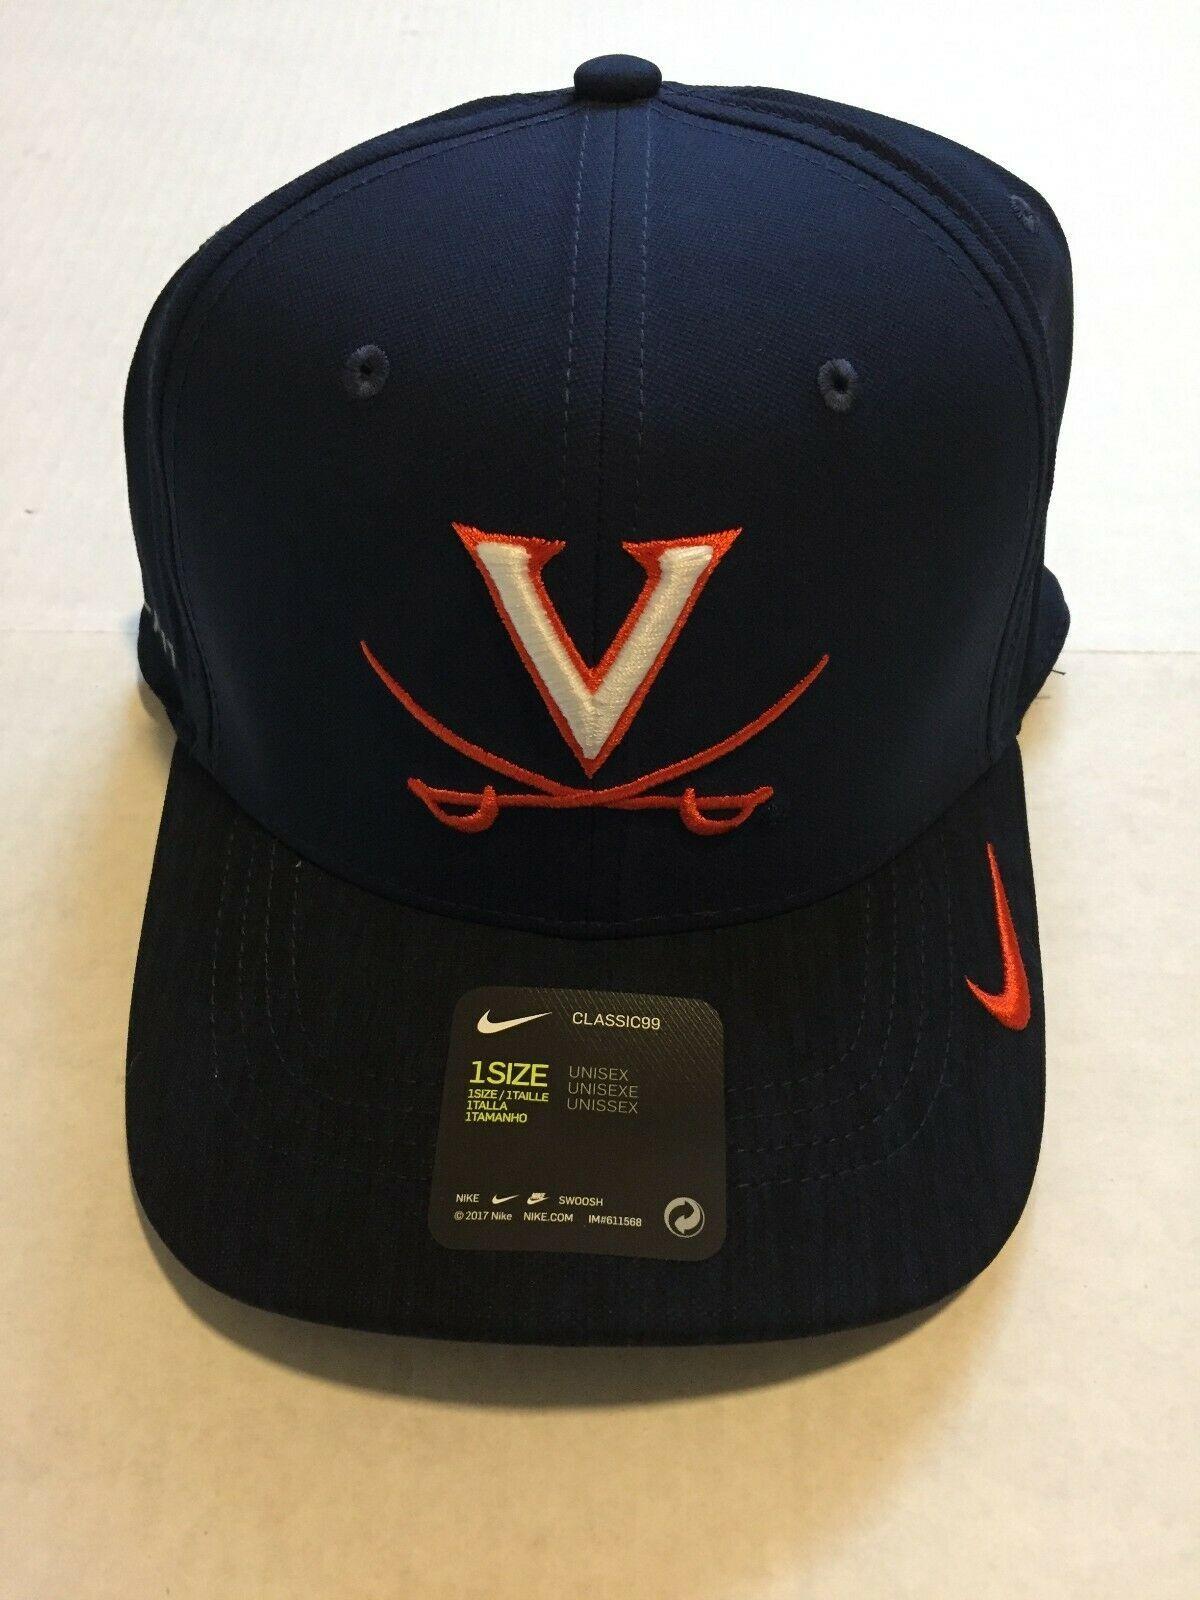 2017Nike Logo - Nike UVA Virginia Cavaliers Classic99 Hat Cap Adjustable Aerobill 2018 NCAA